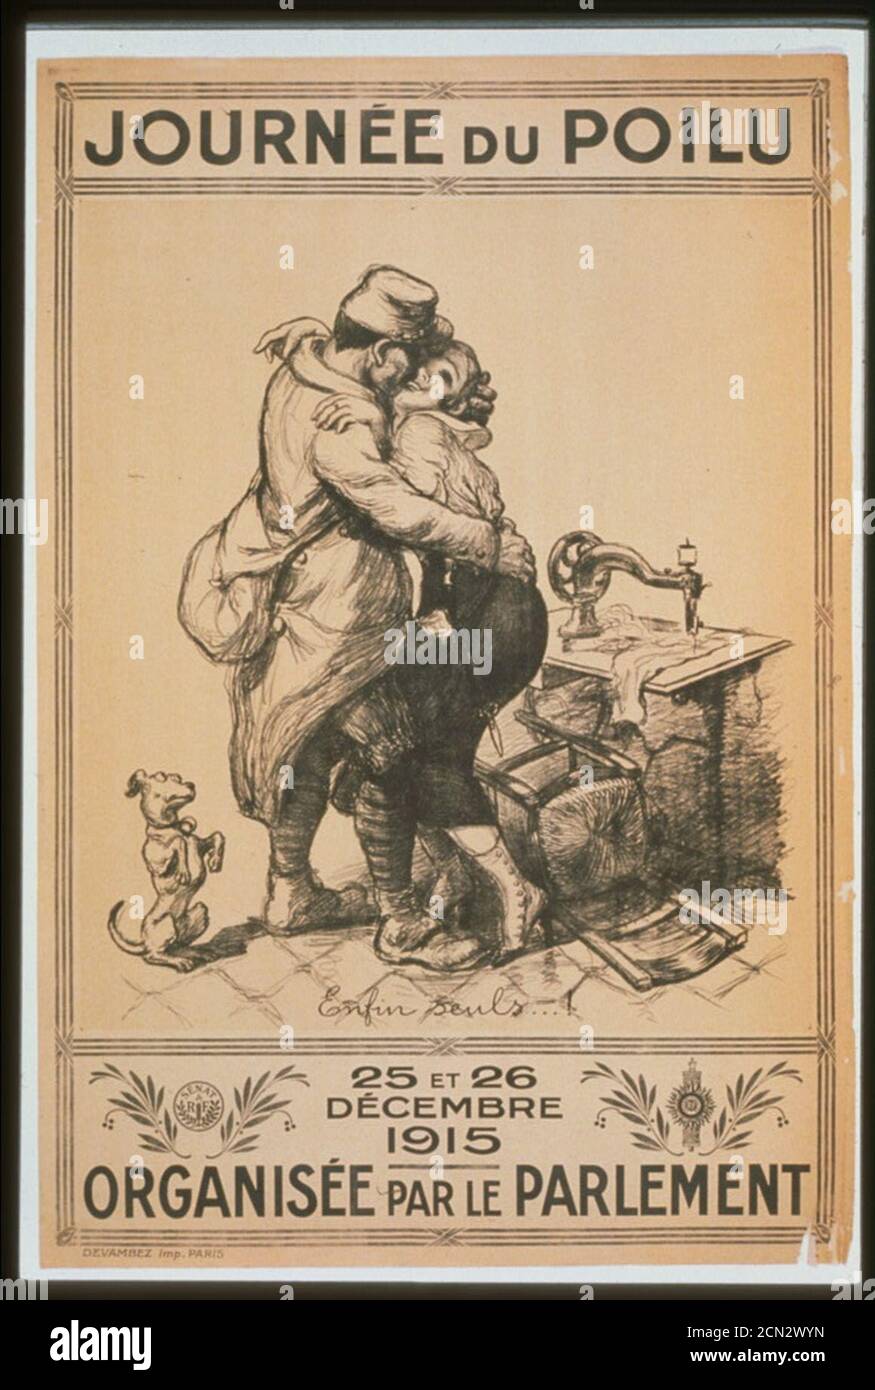 Journé du Poilu. 25 et 26 décembre 1915. Organisée par le parlement Stock Photo